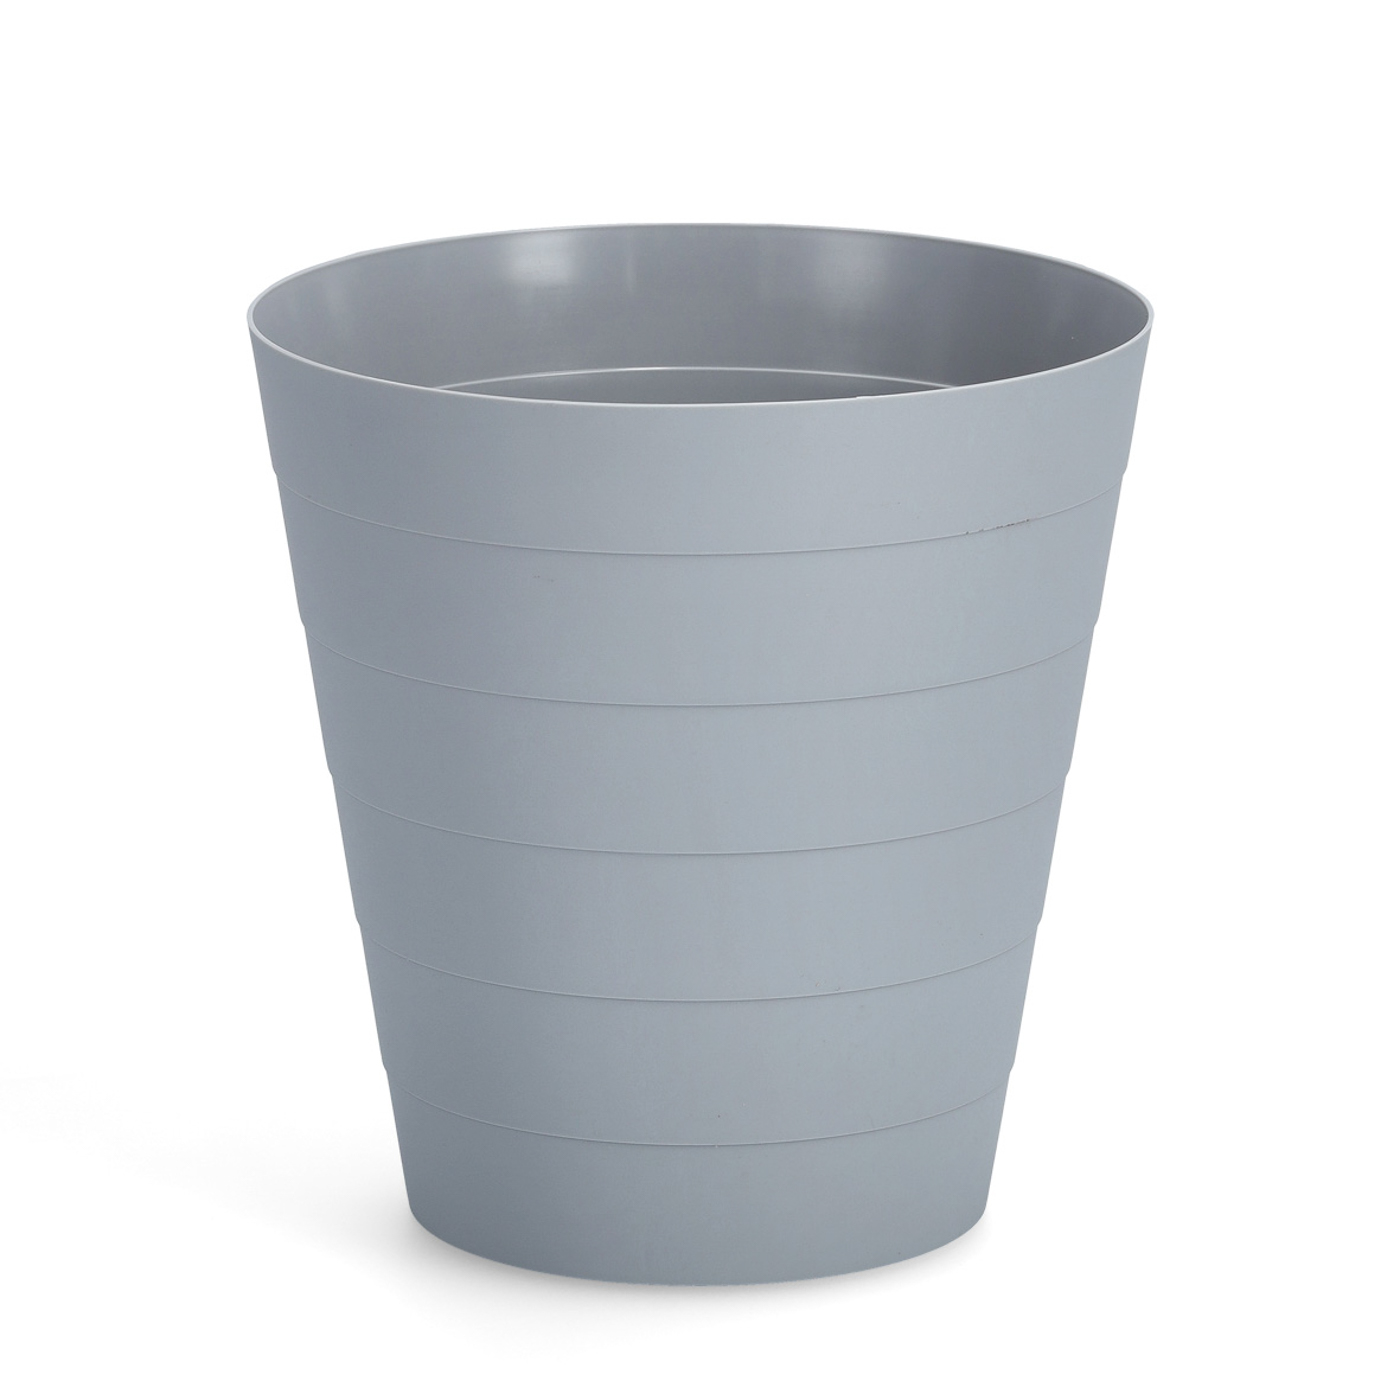 Papierkorb RONDI, Farbe: grau, Volumen: 13,5 Liter, Material: Kunststoff, Höhe: 30 cm, Durchmesser: 29 cm